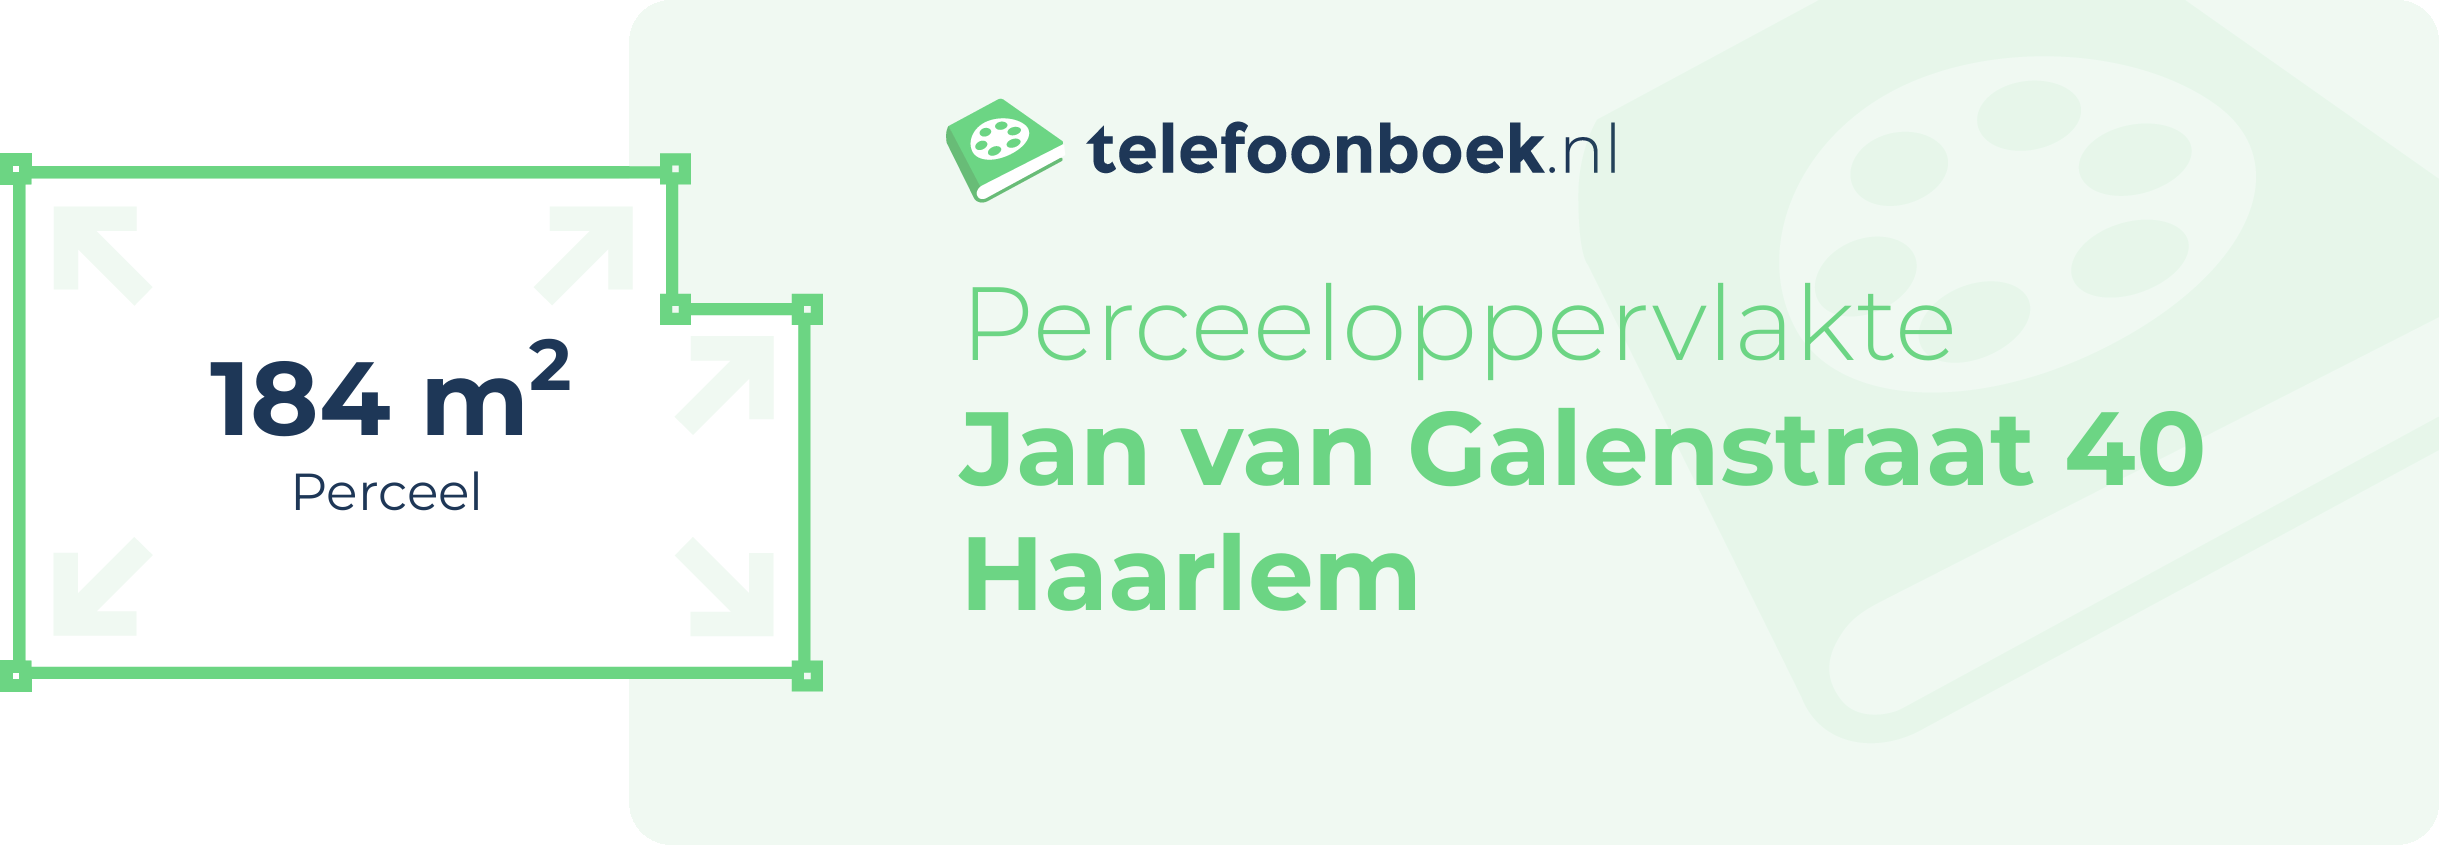 Perceeloppervlakte Jan Van Galenstraat 40 Haarlem